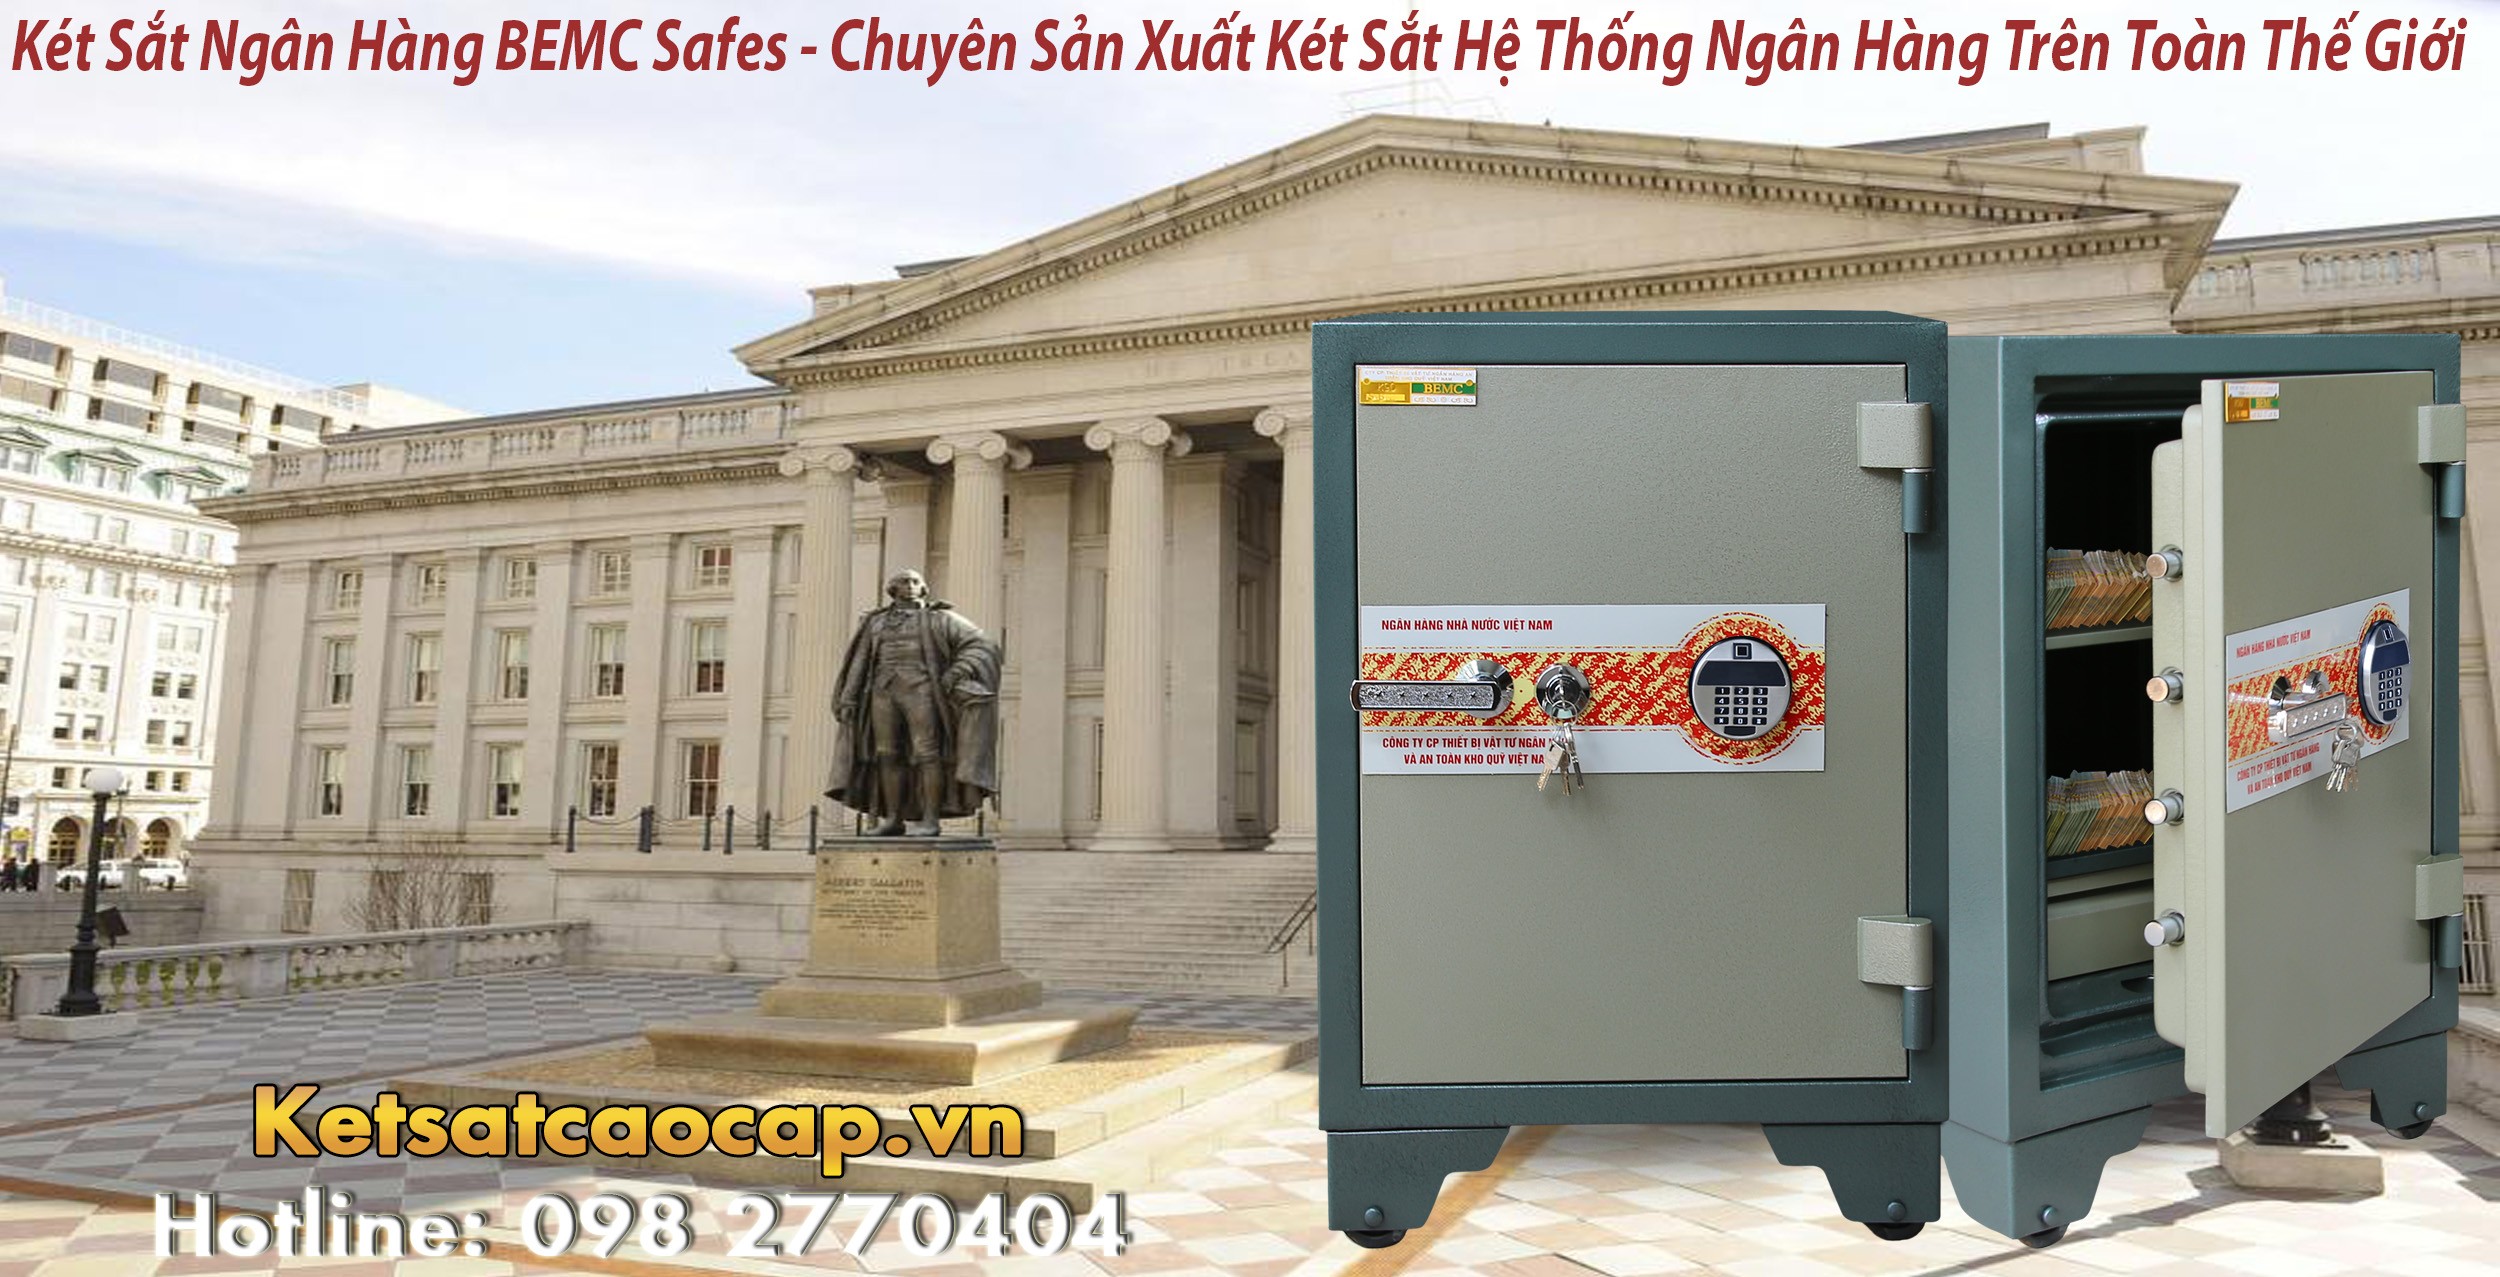 hình ảnh sản phẩm mua két sắt vân tay nhập khẩu Đà Nẵng